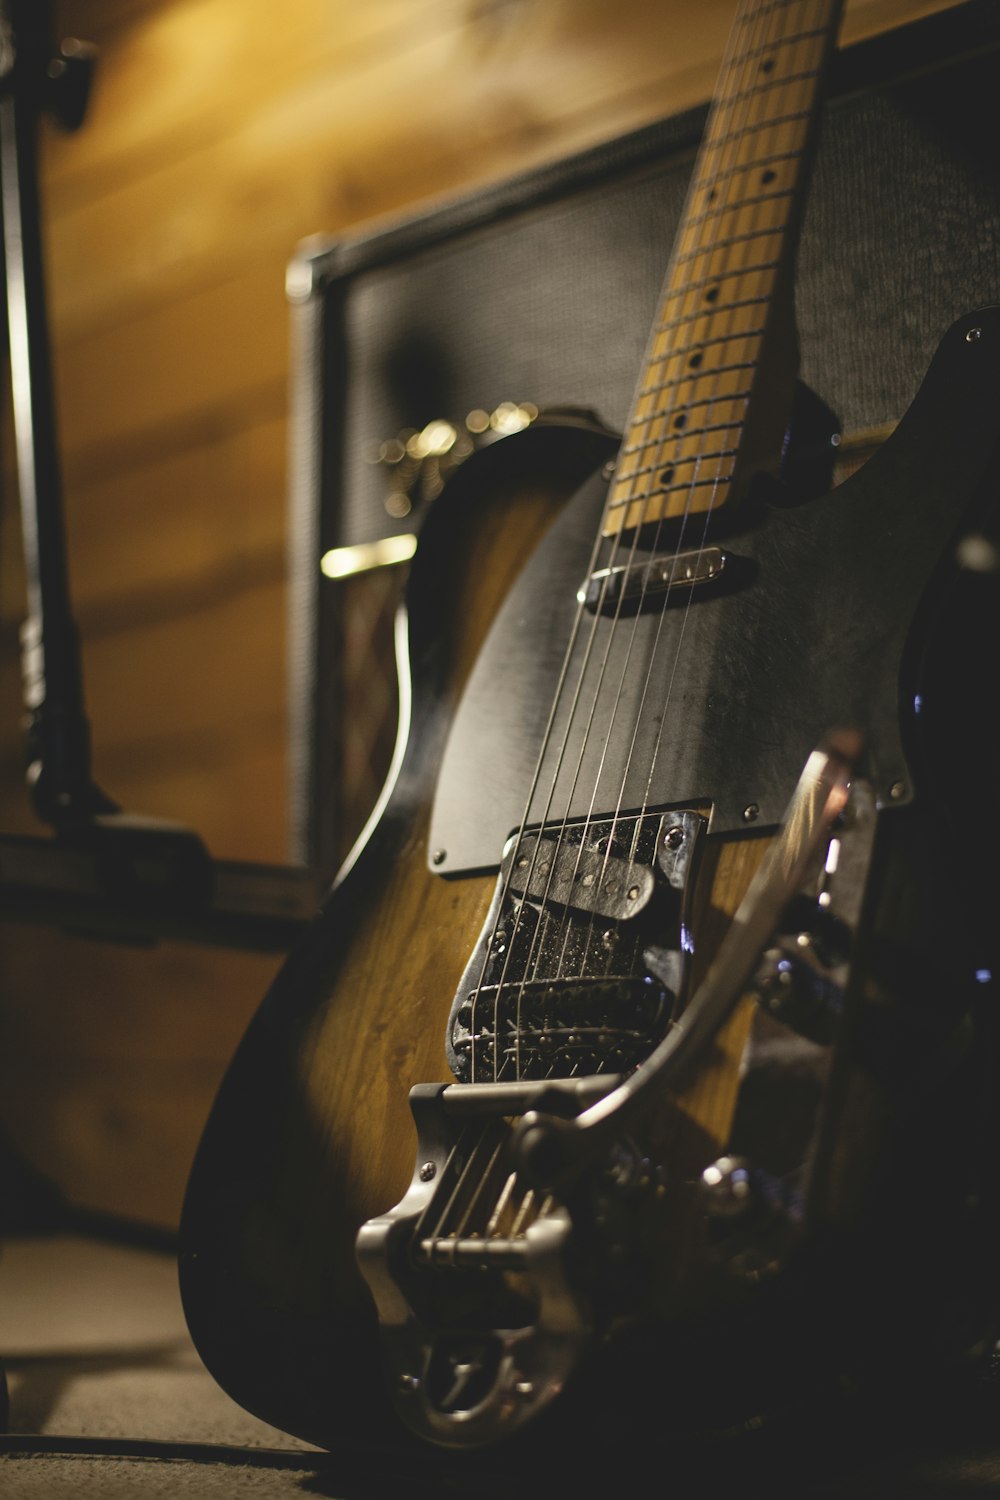 Foto de enfoque superficial de guitarra eléctrica negra y marrón